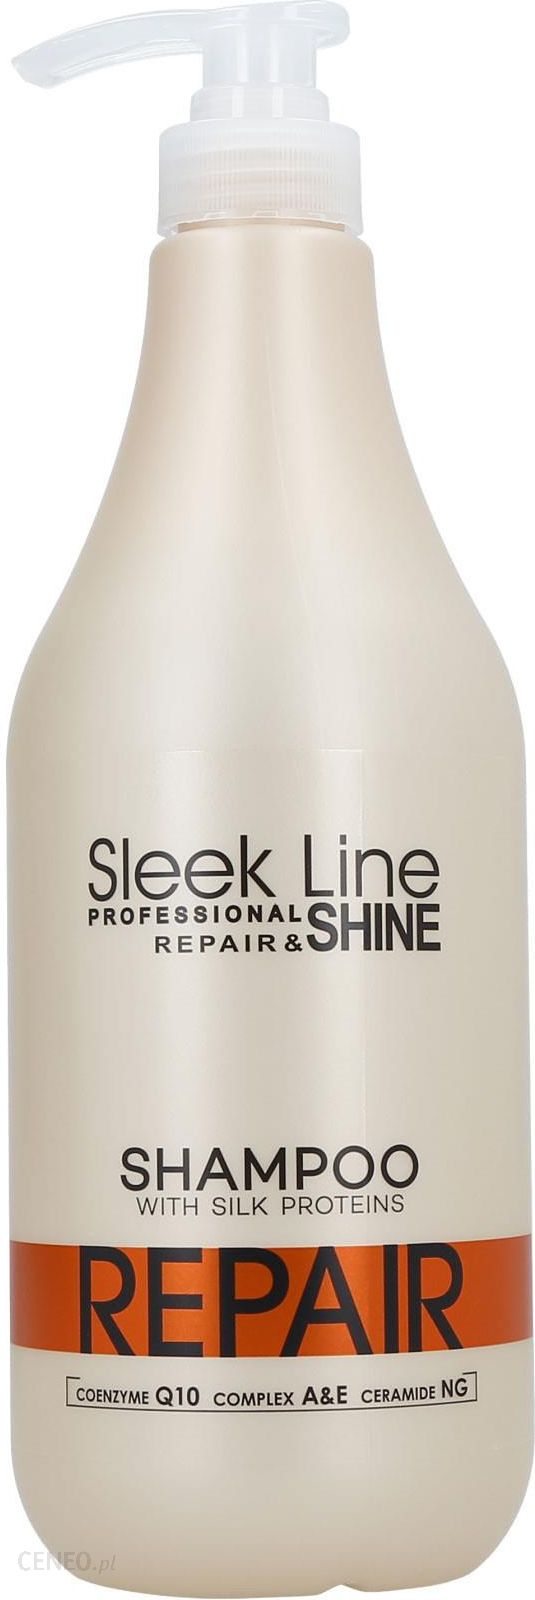 sleek line szampon cena